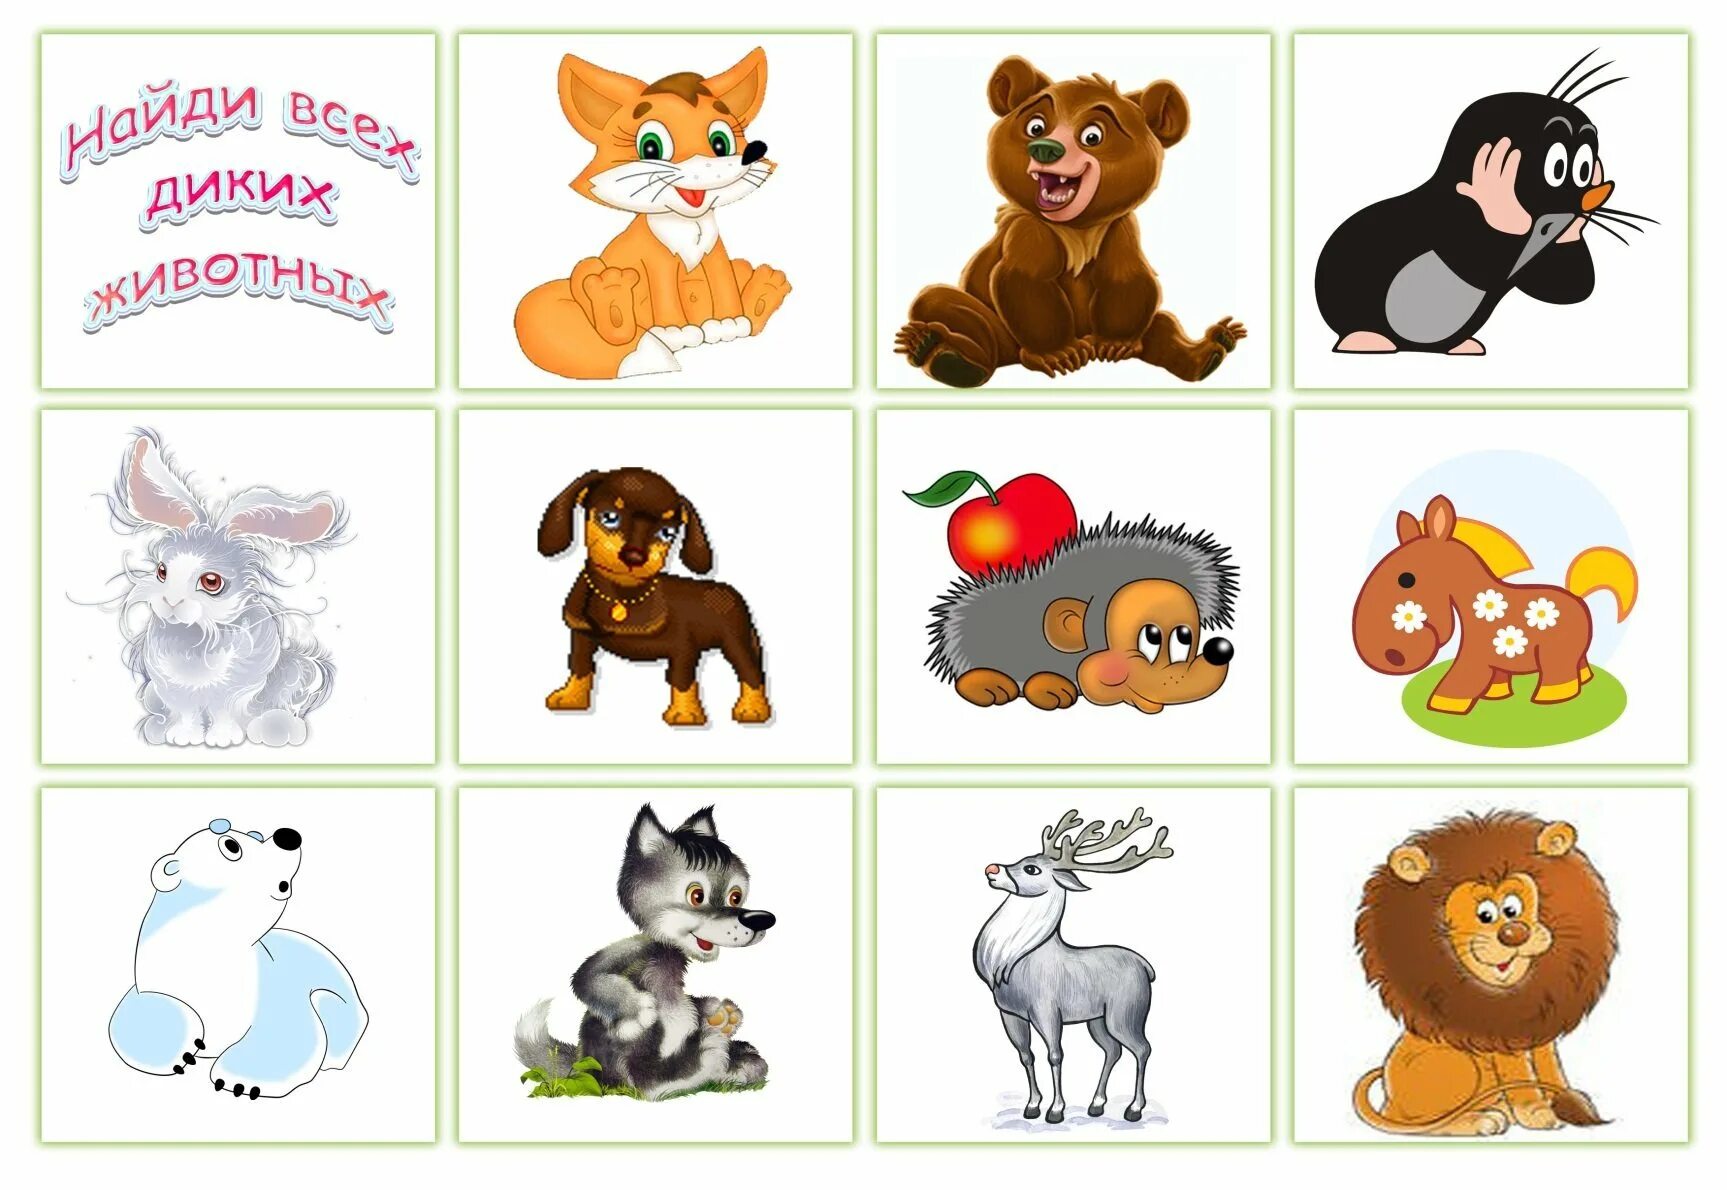 Узнавать про животных. Картинки животных для детей. Рисунки животных для детей. Карточки с изображением животных для детей. Картинки зверей для детей.